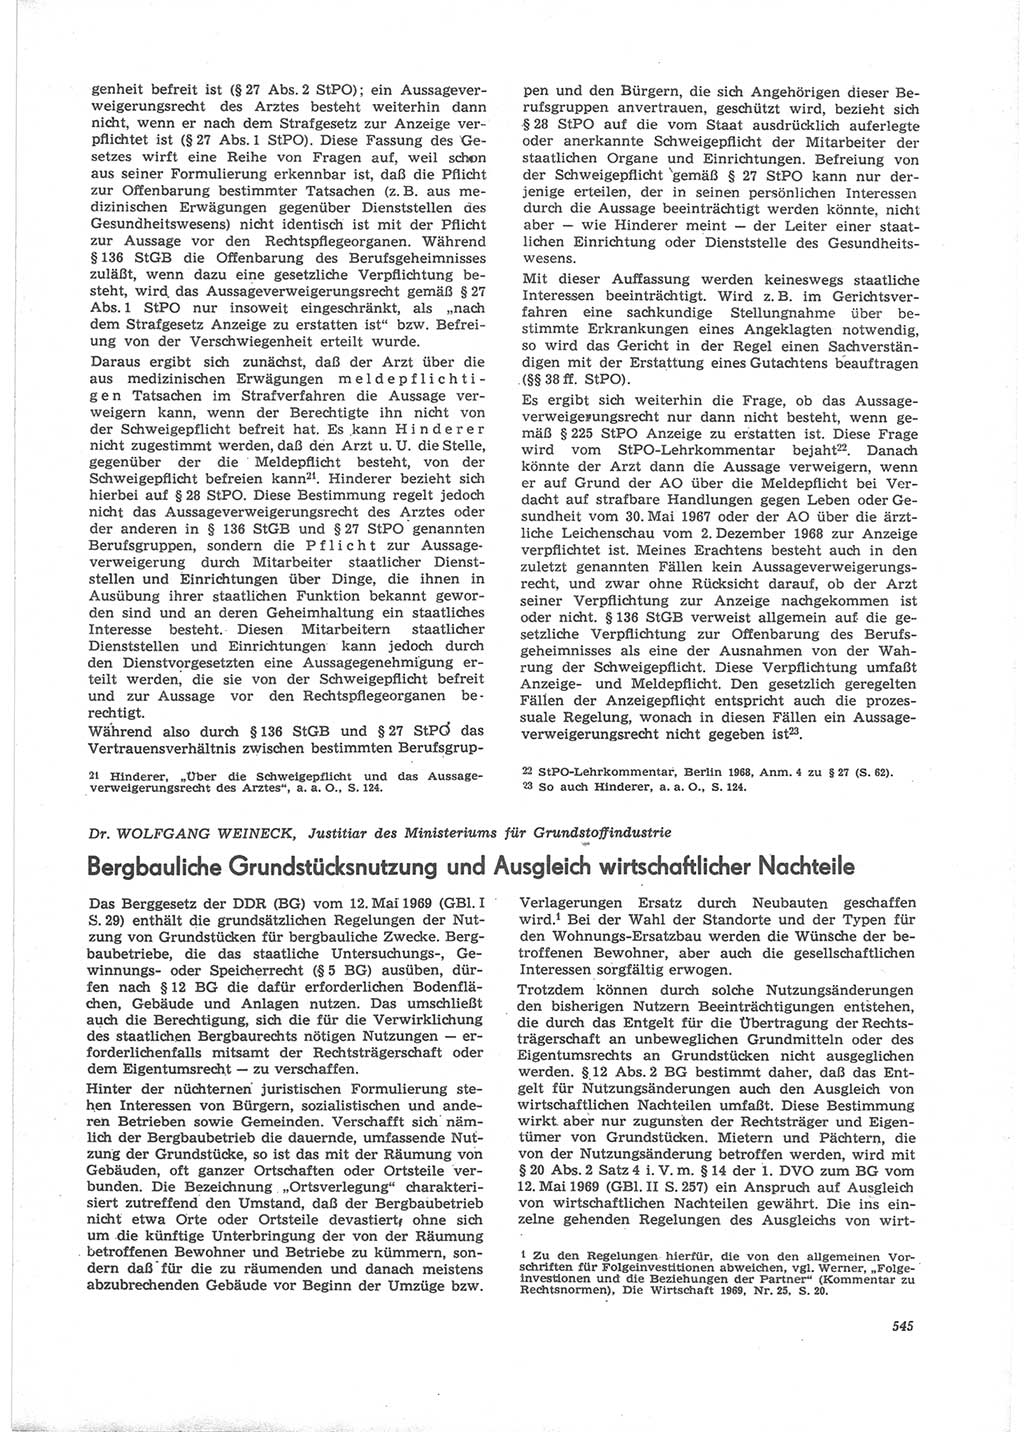 Neue Justiz (NJ), Zeitschrift für Recht und Rechtswissenschaft [Deutsche Demokratische Republik (DDR)], 24. Jahrgang 1970, Seite 545 (NJ DDR 1970, S. 545)